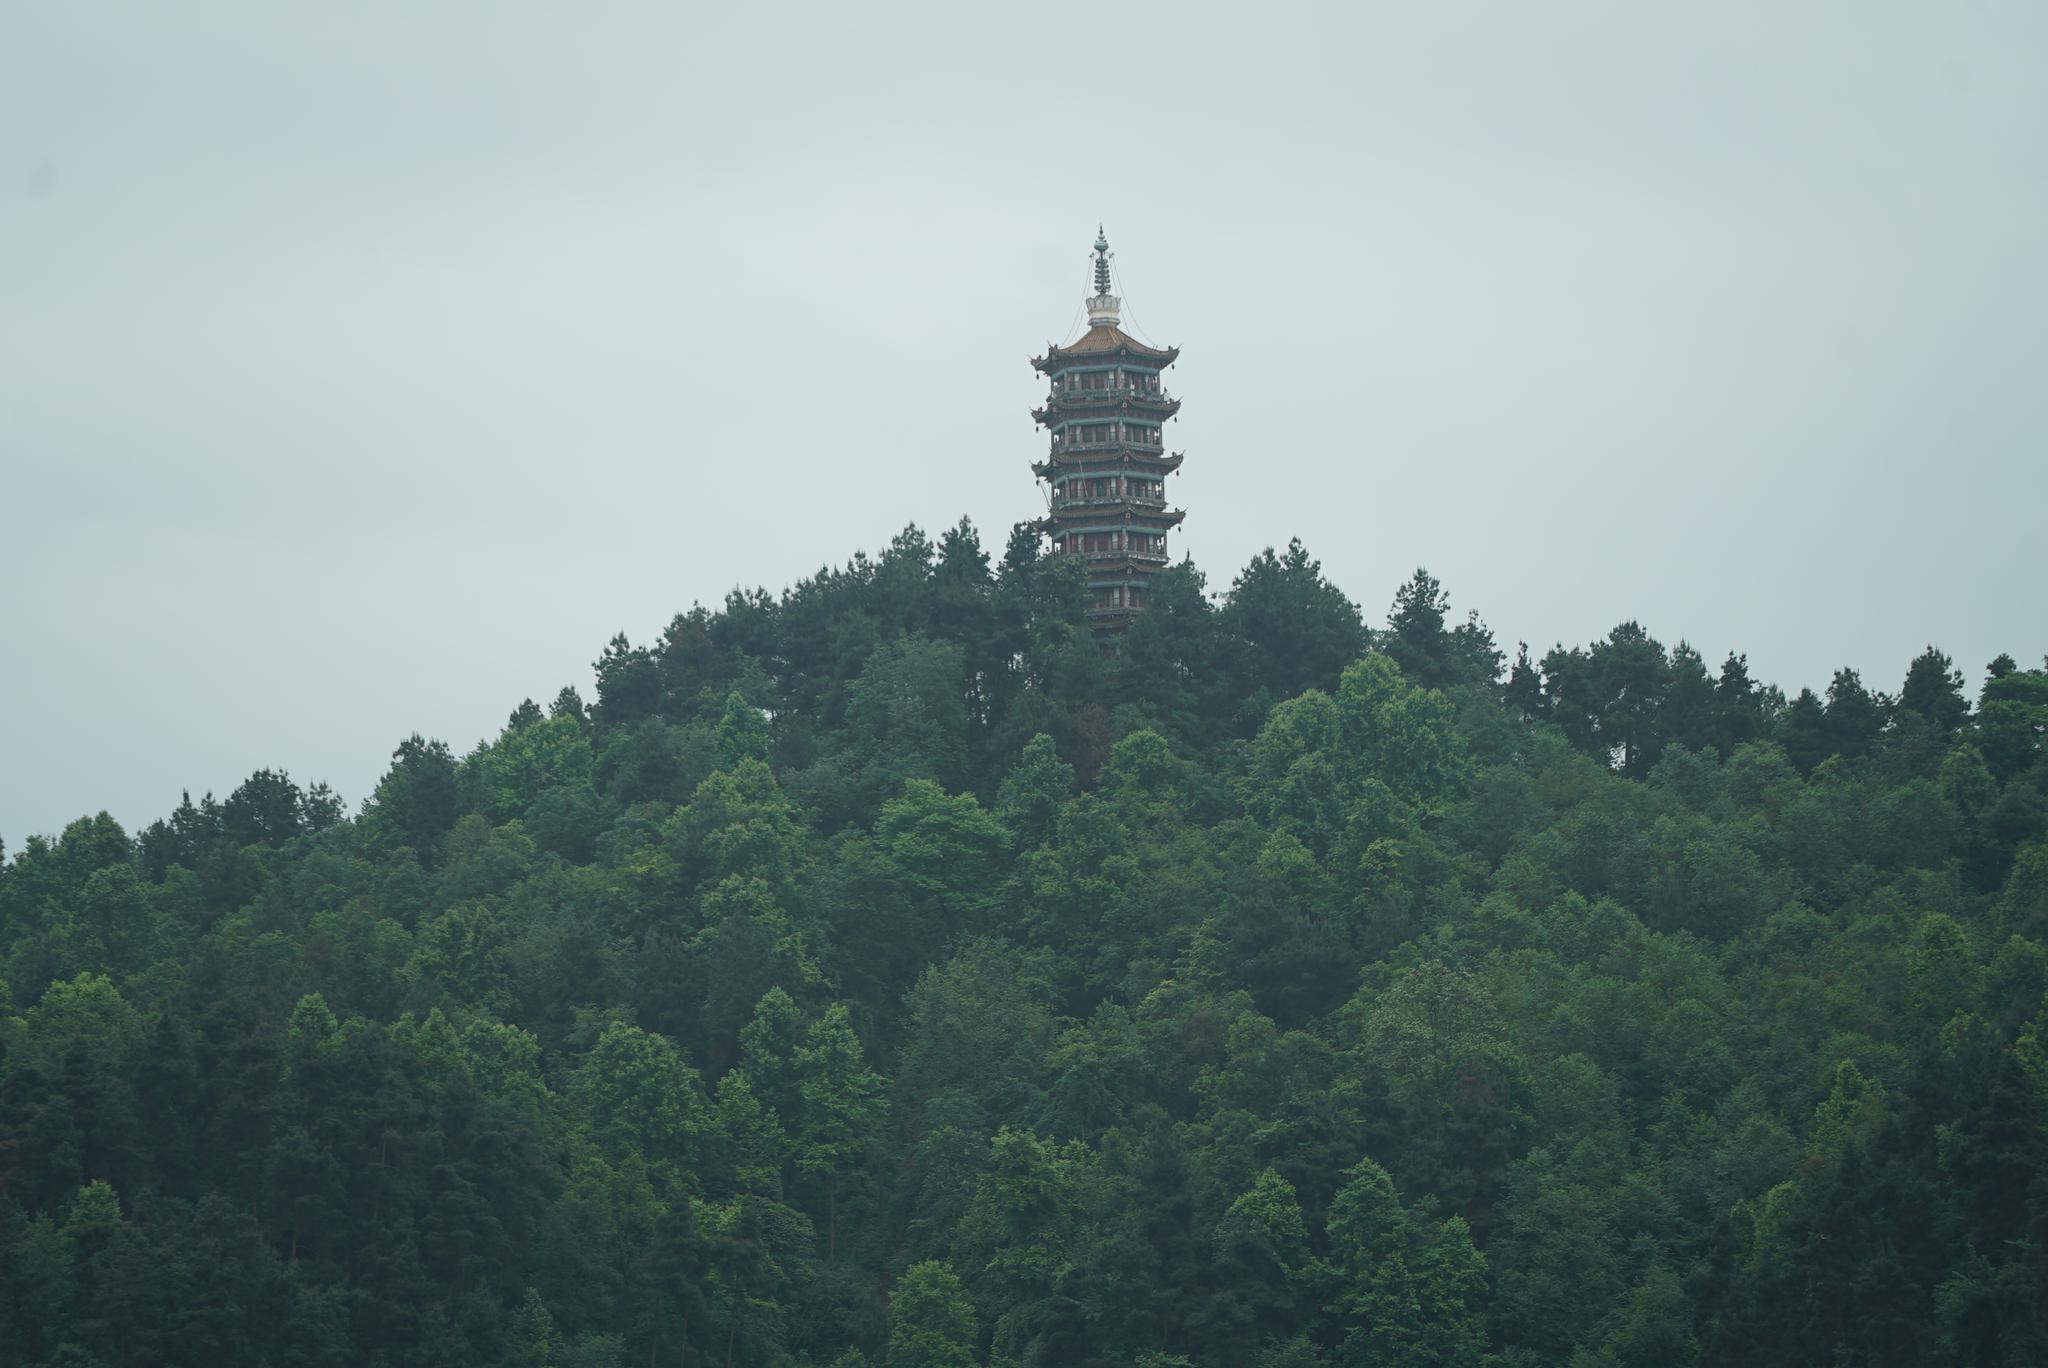 凤凰楼地处贵州省遵义市凤凰山主峰,是一处识别性很高的地标建筑,游客